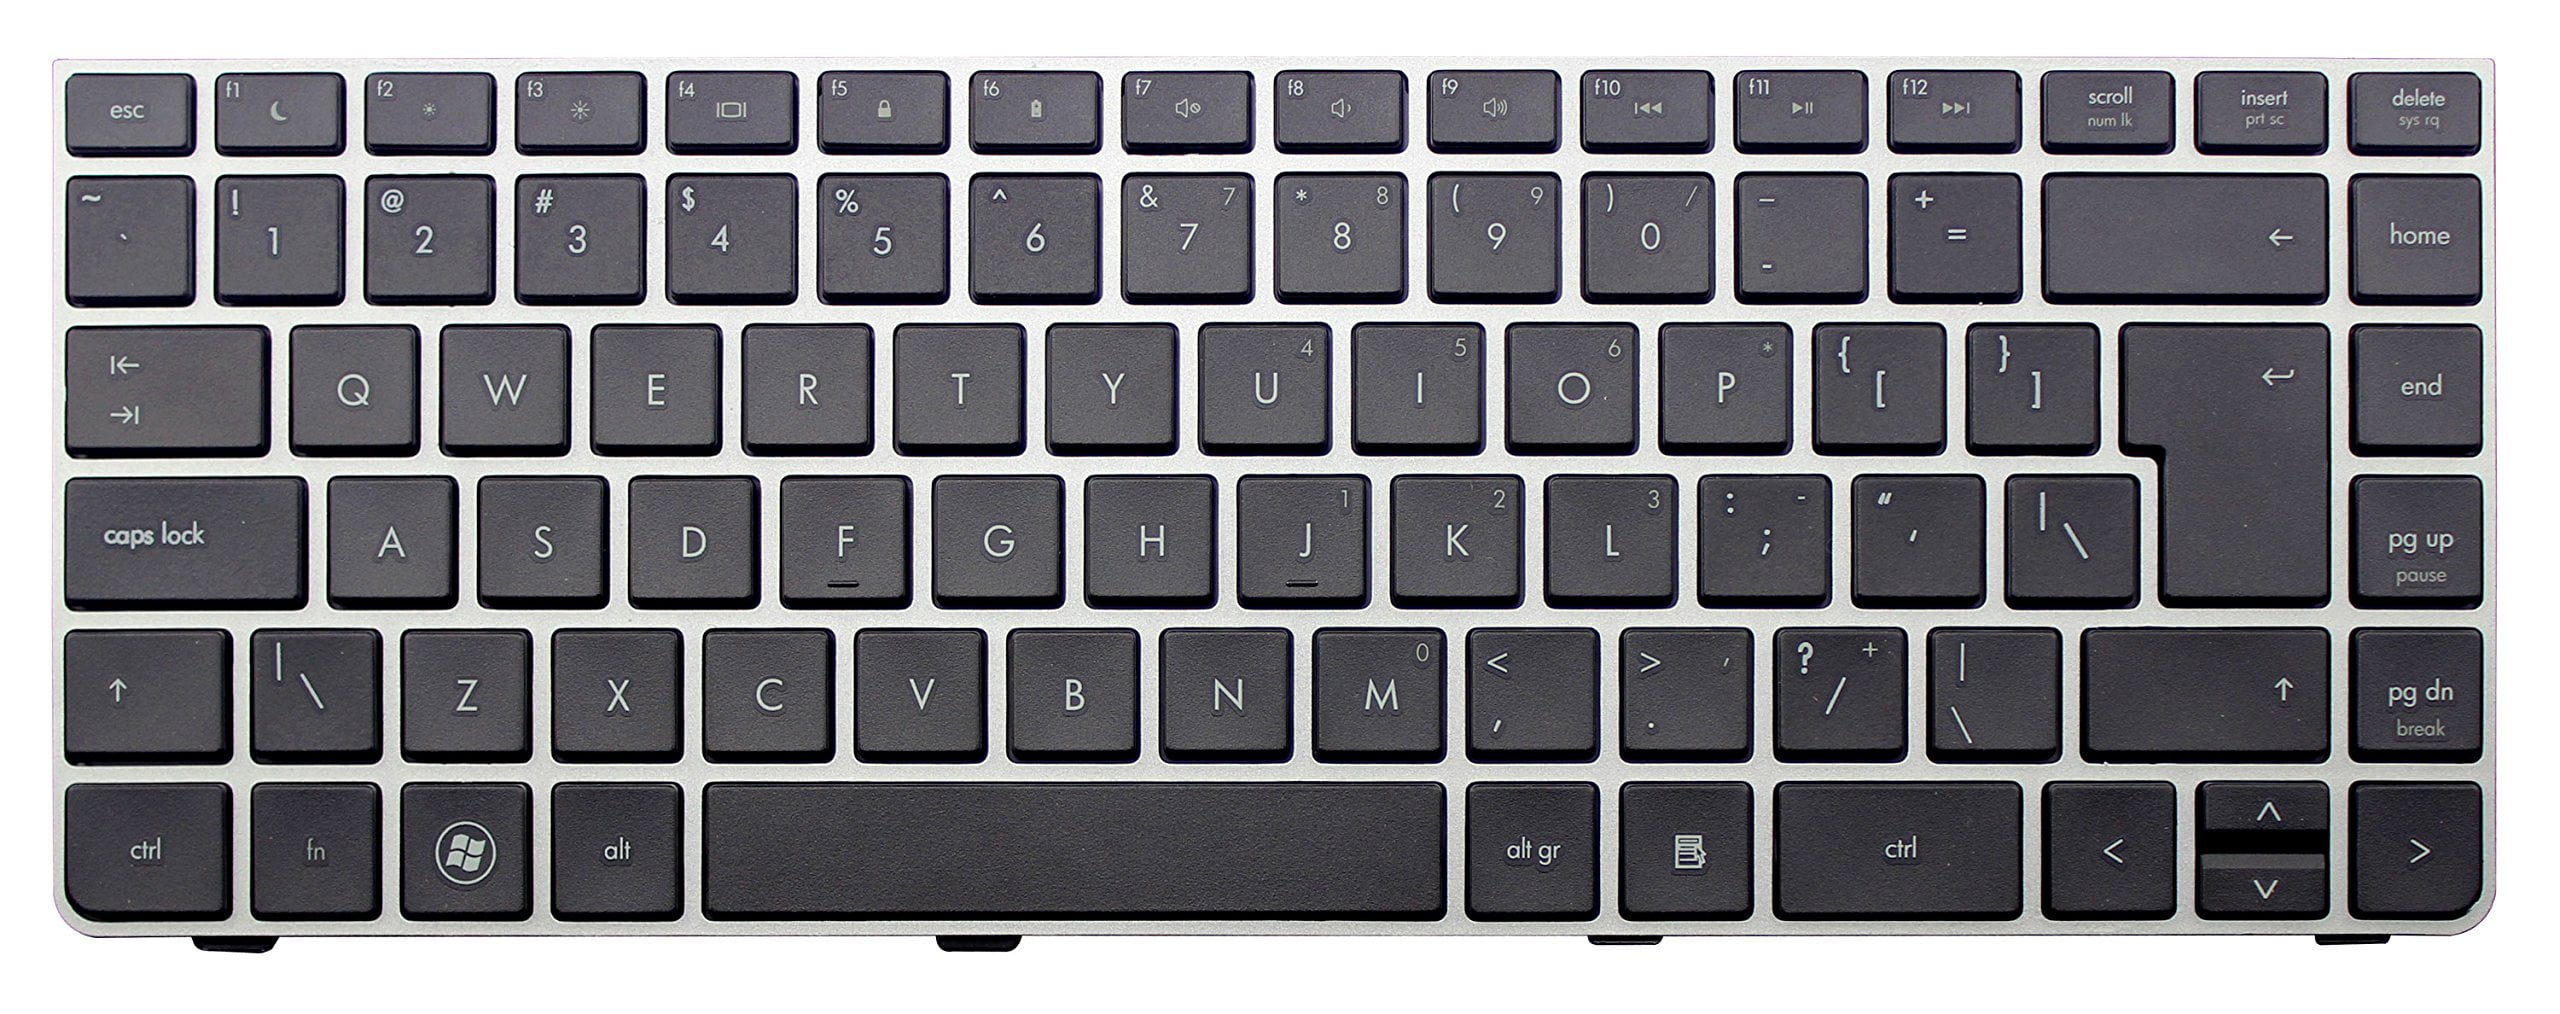 10 key keyboard layout